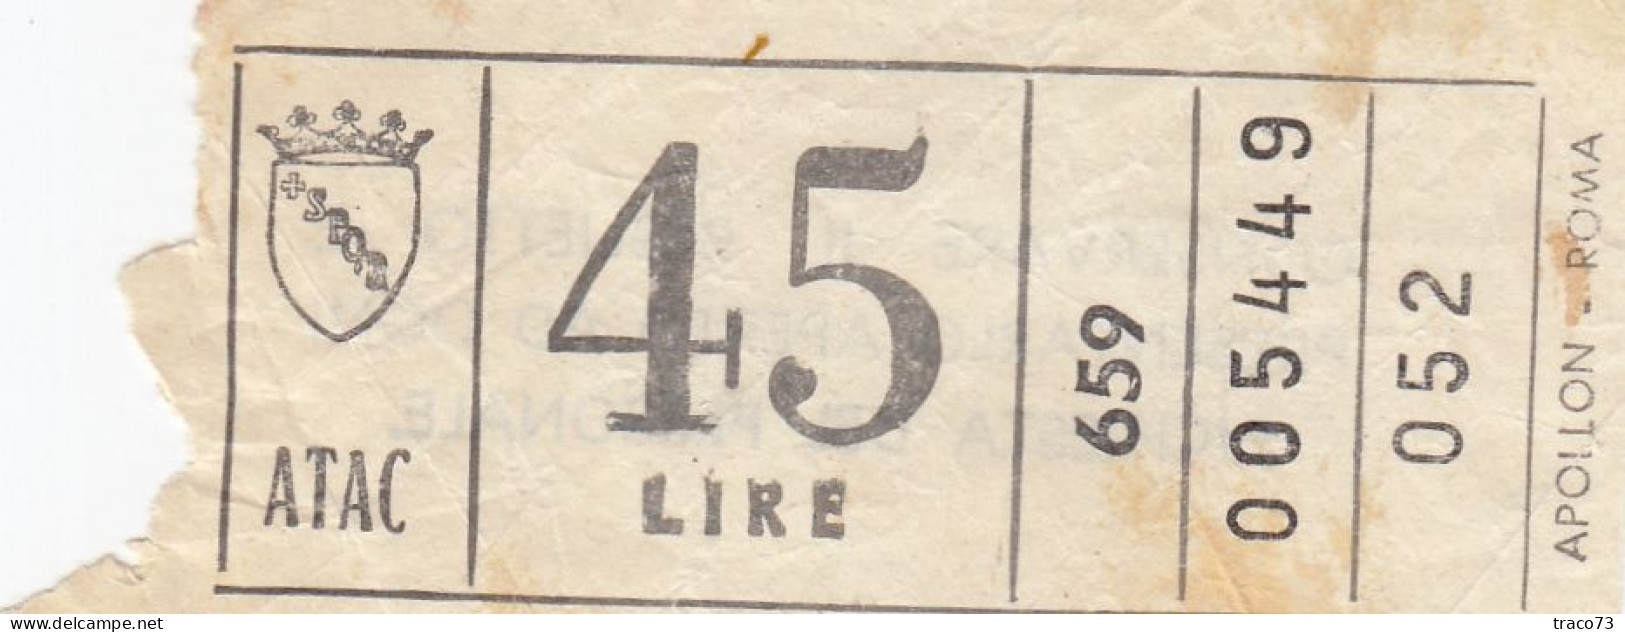 ATAC - ROMA  _ Anni '50-'60 /  Ticket  _ Biglietto Da Lire 45 - Europa